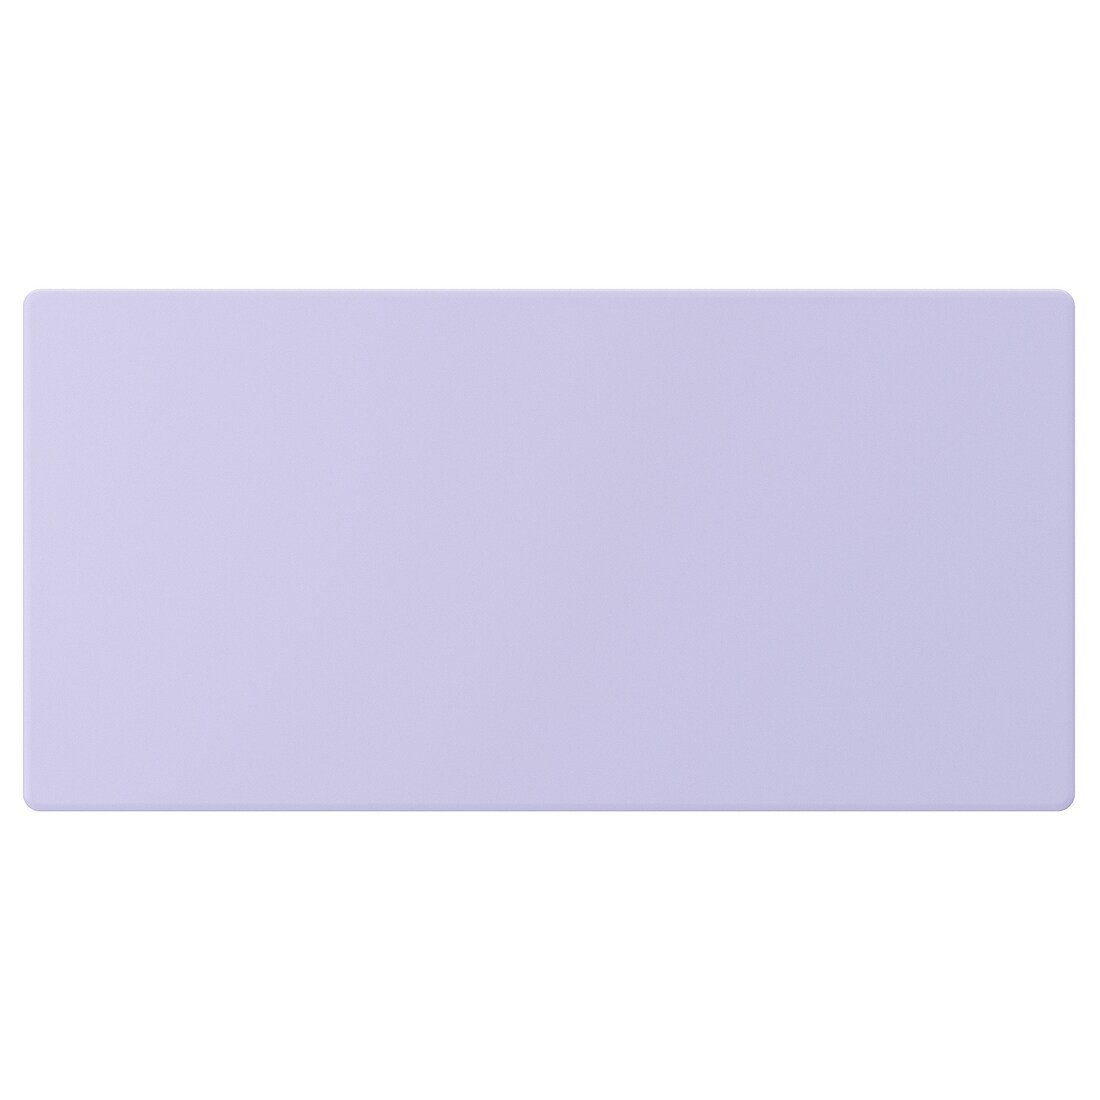 SMÅSTAD Фронтальна панель для шухляди антрацит, блідо-фіолетовий, 60x30 см